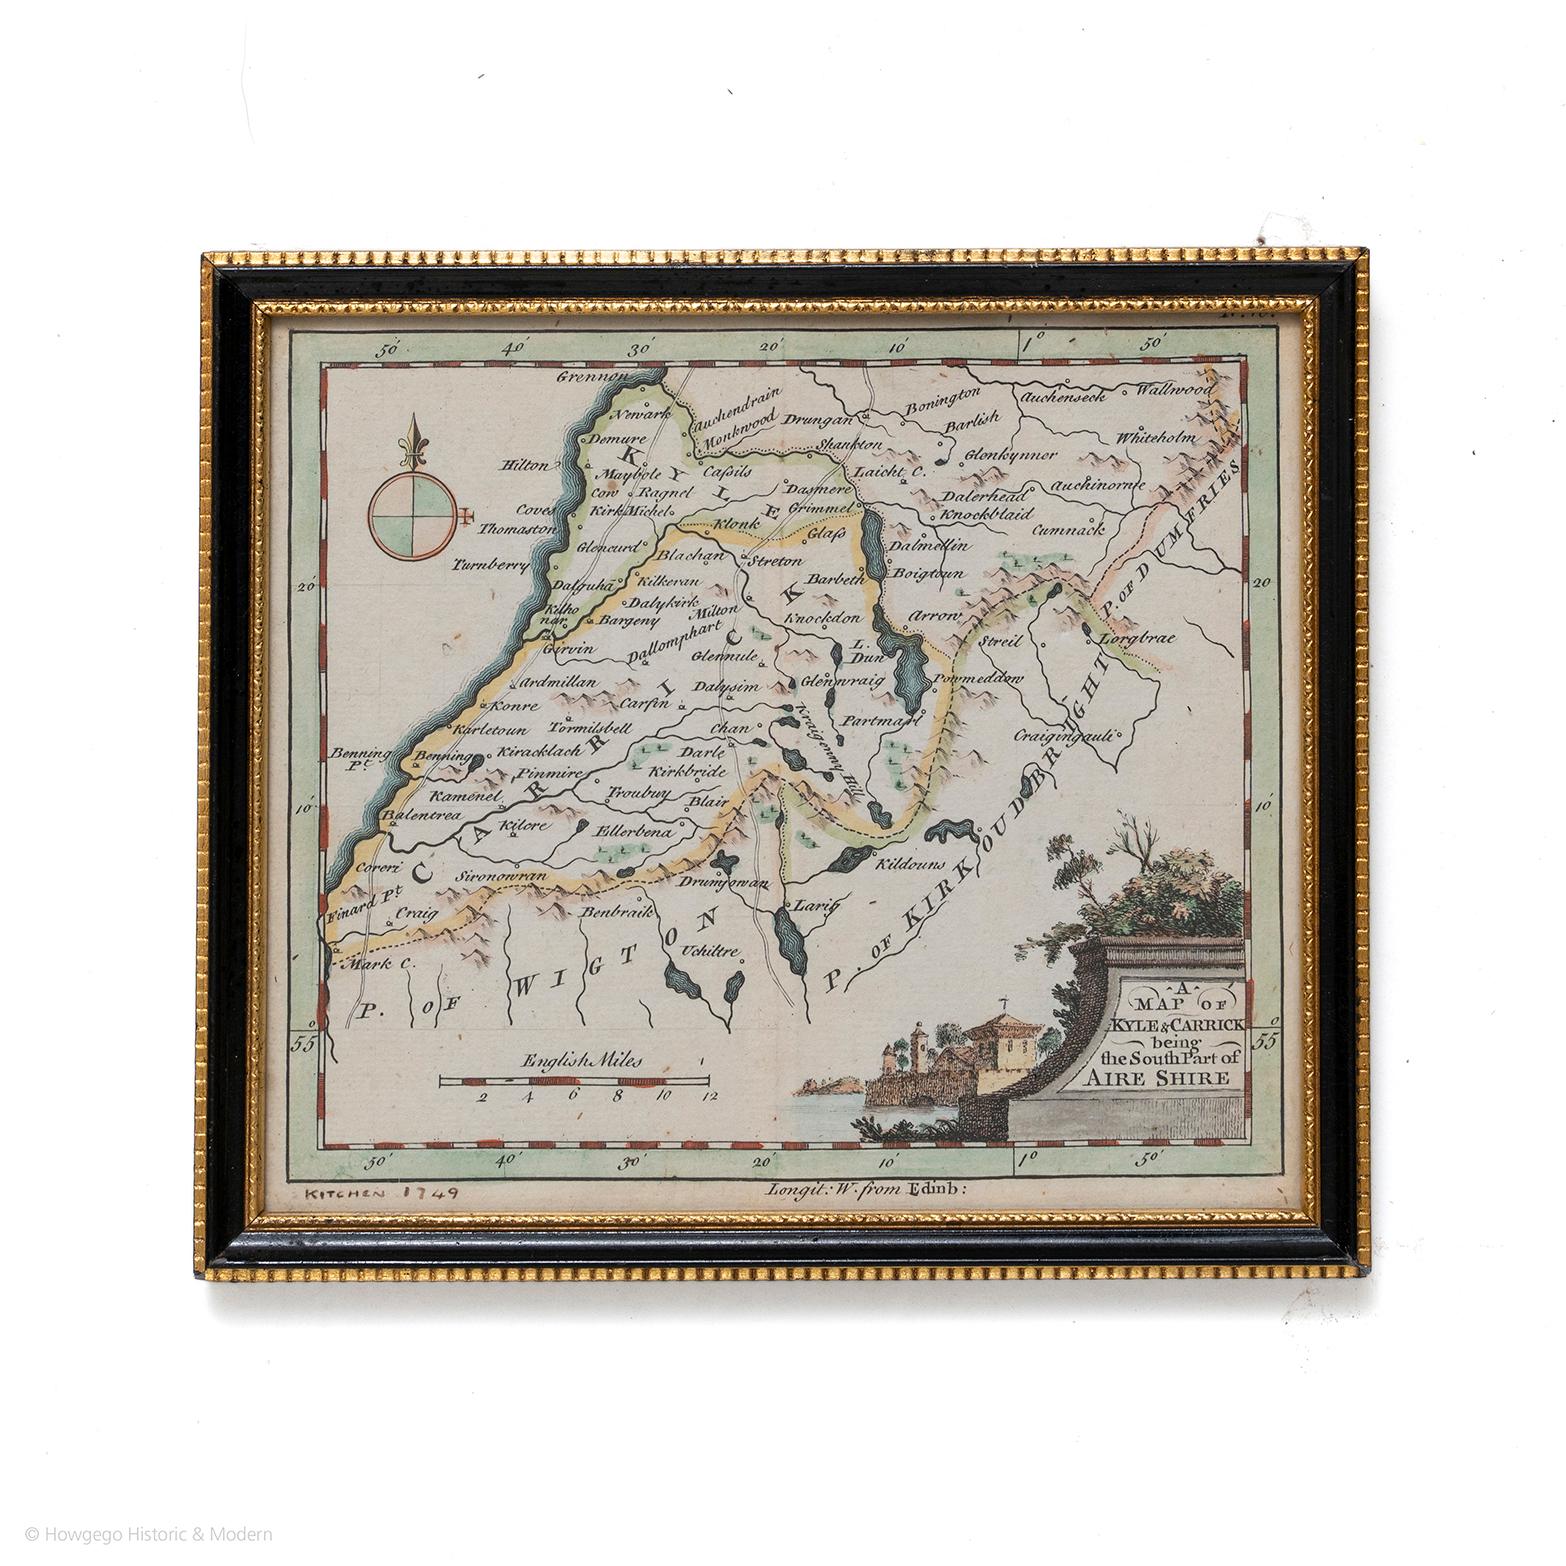 Une carte de Kyle et Carrick Aireshire Thomas Kitchen 1749
Dans son cadre original noir et or
Vient d'être acheté plus d'informations à suivre

FABRICANT Thomas Kitchin (1718-1784) Graveur et cartographe anglais, qui devint hydrographe du roi.